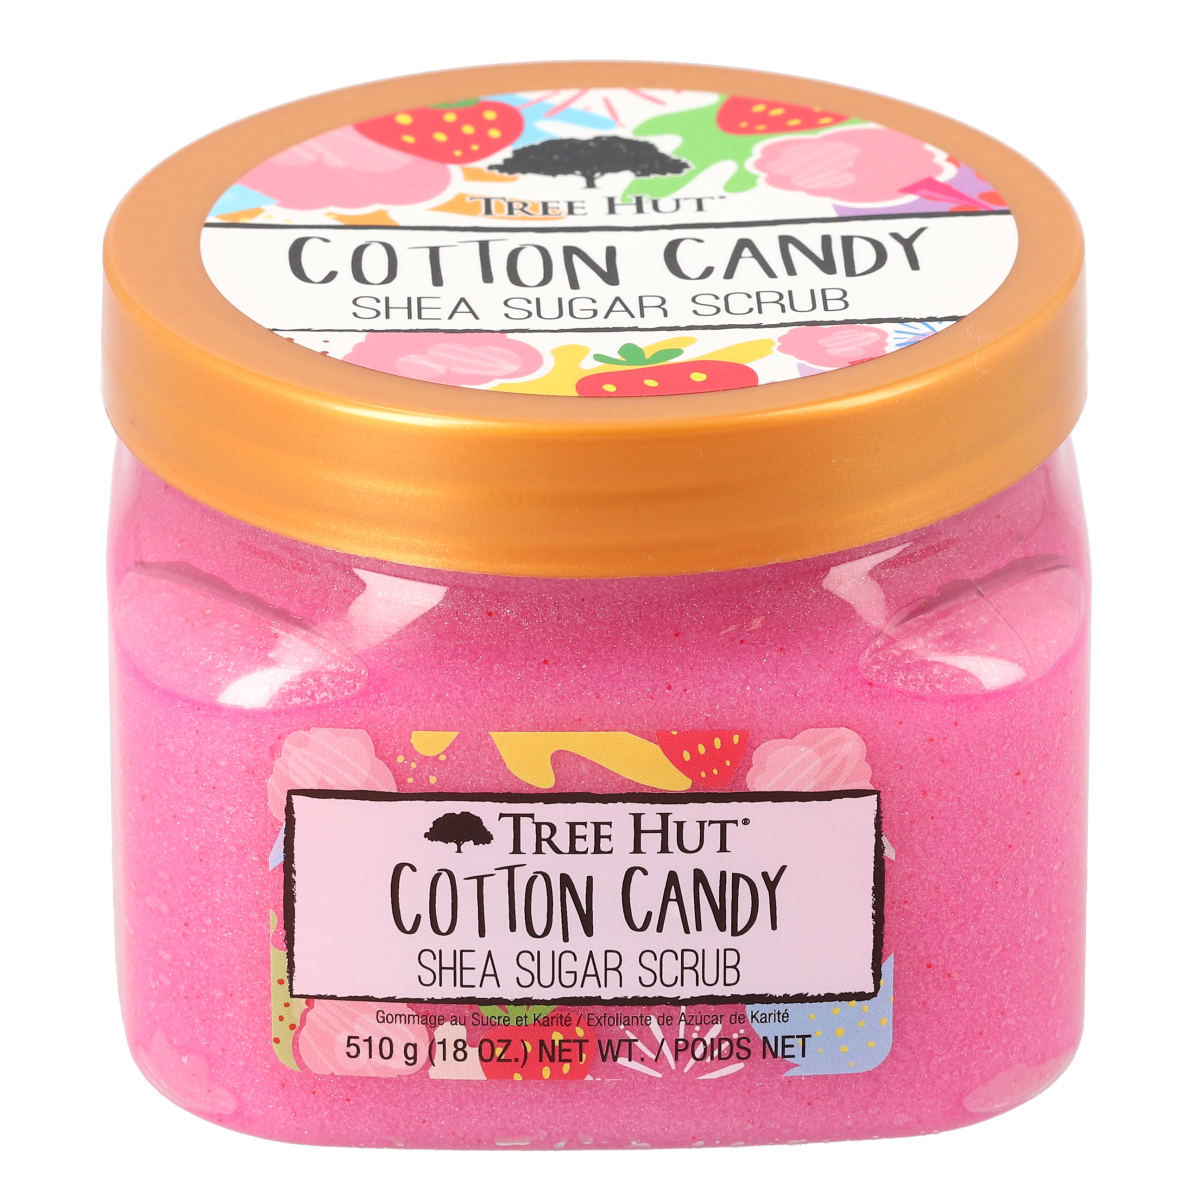 Cotton Candy shea sugar scrub - tree hut - Nuestro Secreto